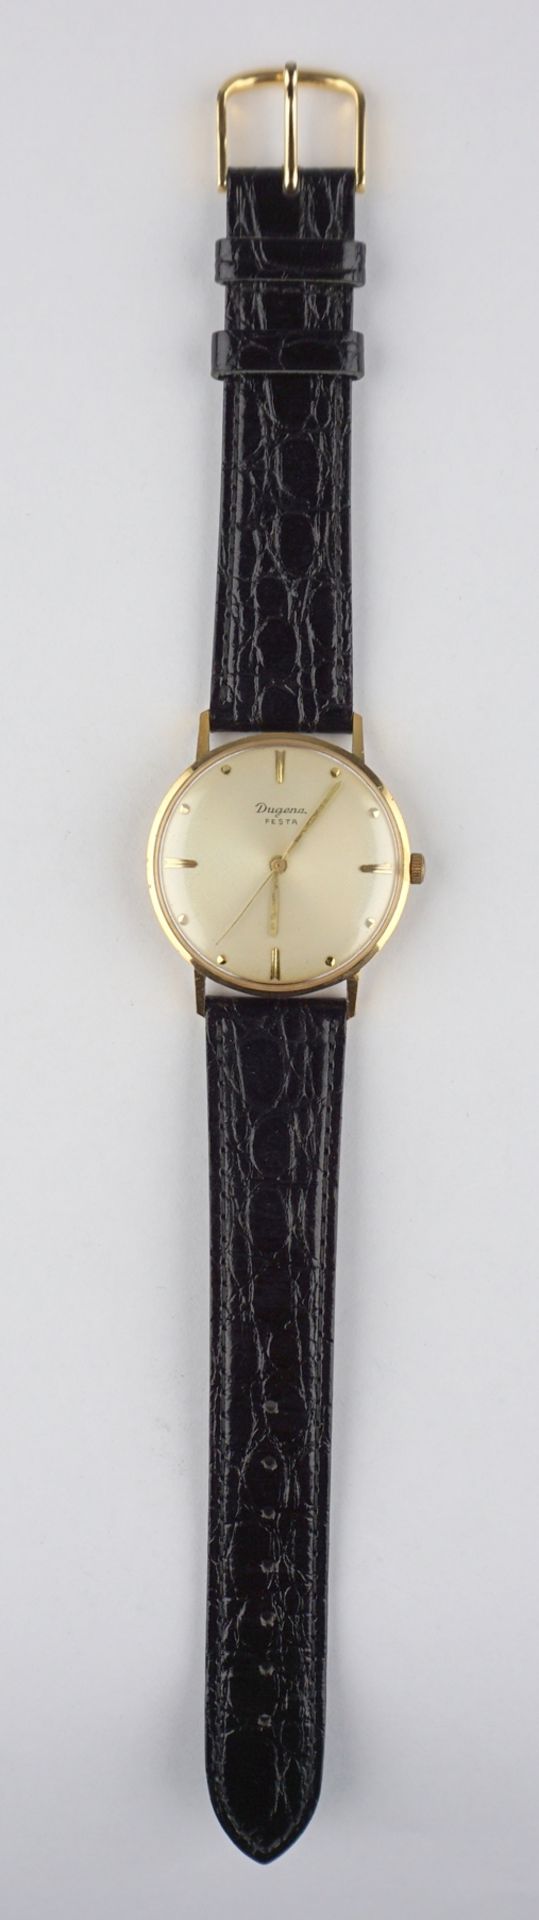 klassische Armbanduhr Dugena Festa, 1960er Jahre - Image 2 of 4